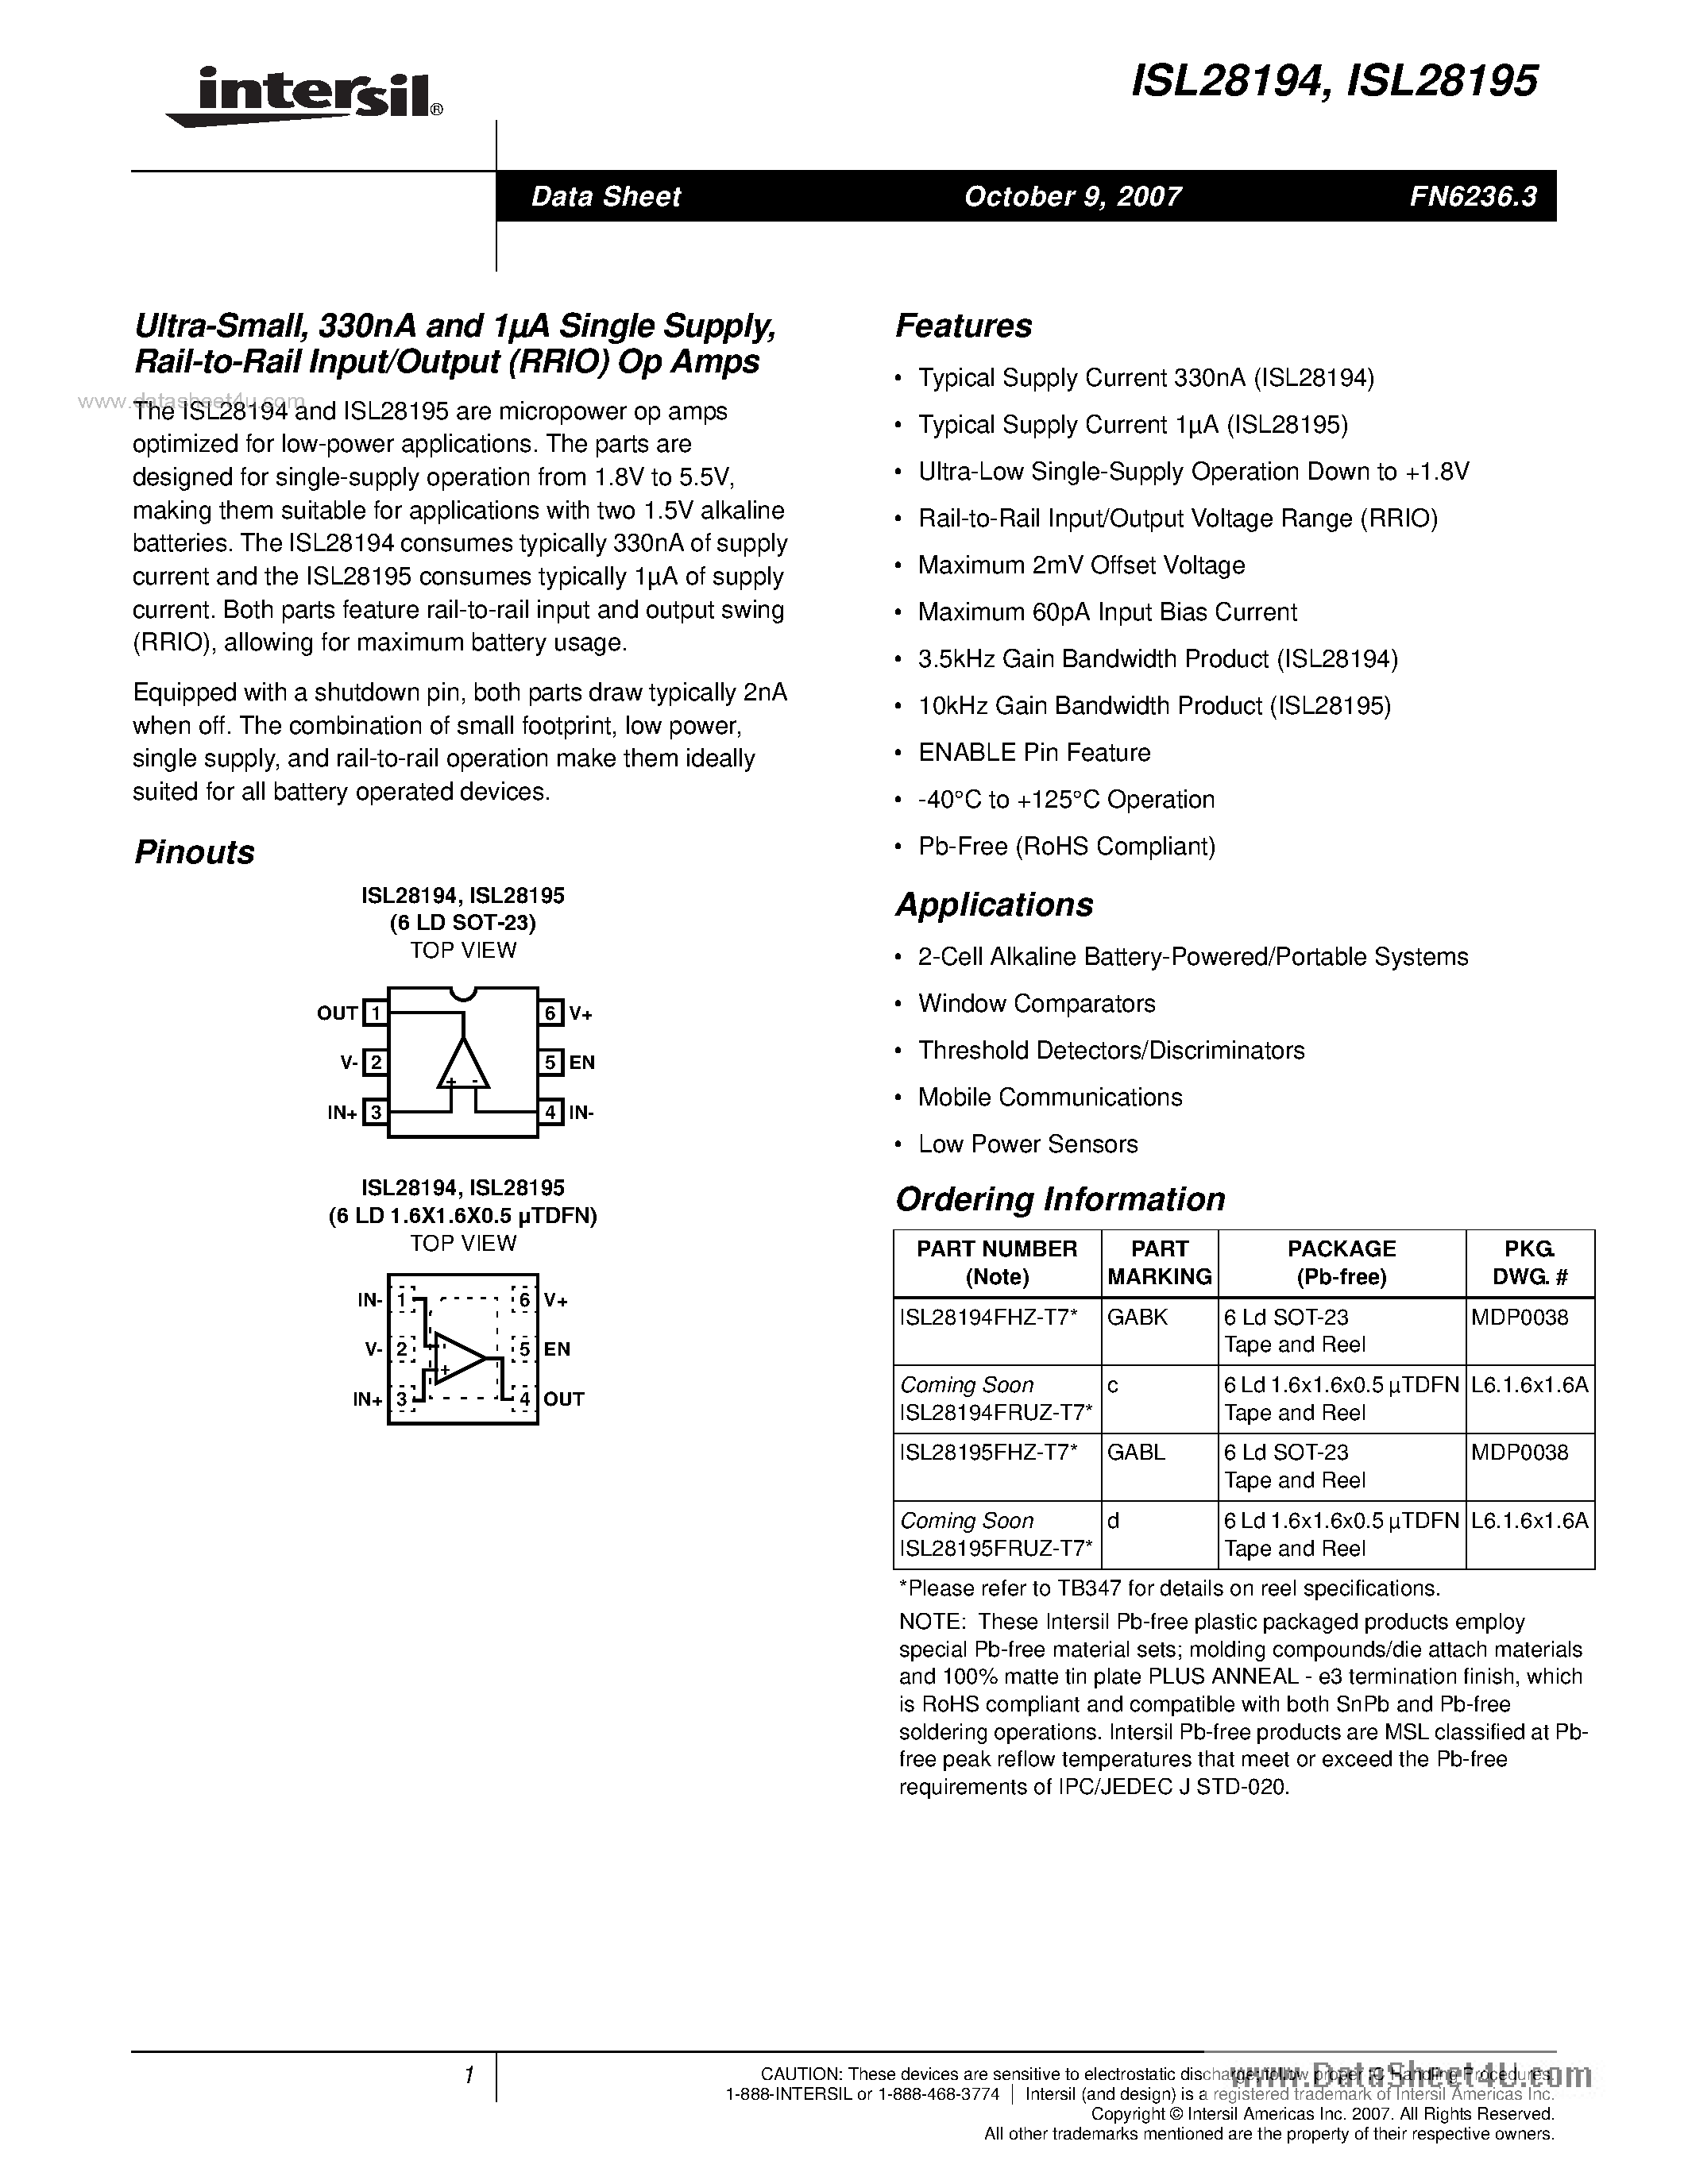 Даташит ISL28194-(ISL28194 / ISL28195) Rail-to-Rail Input/Output (RRIO) Op Amps страница 1